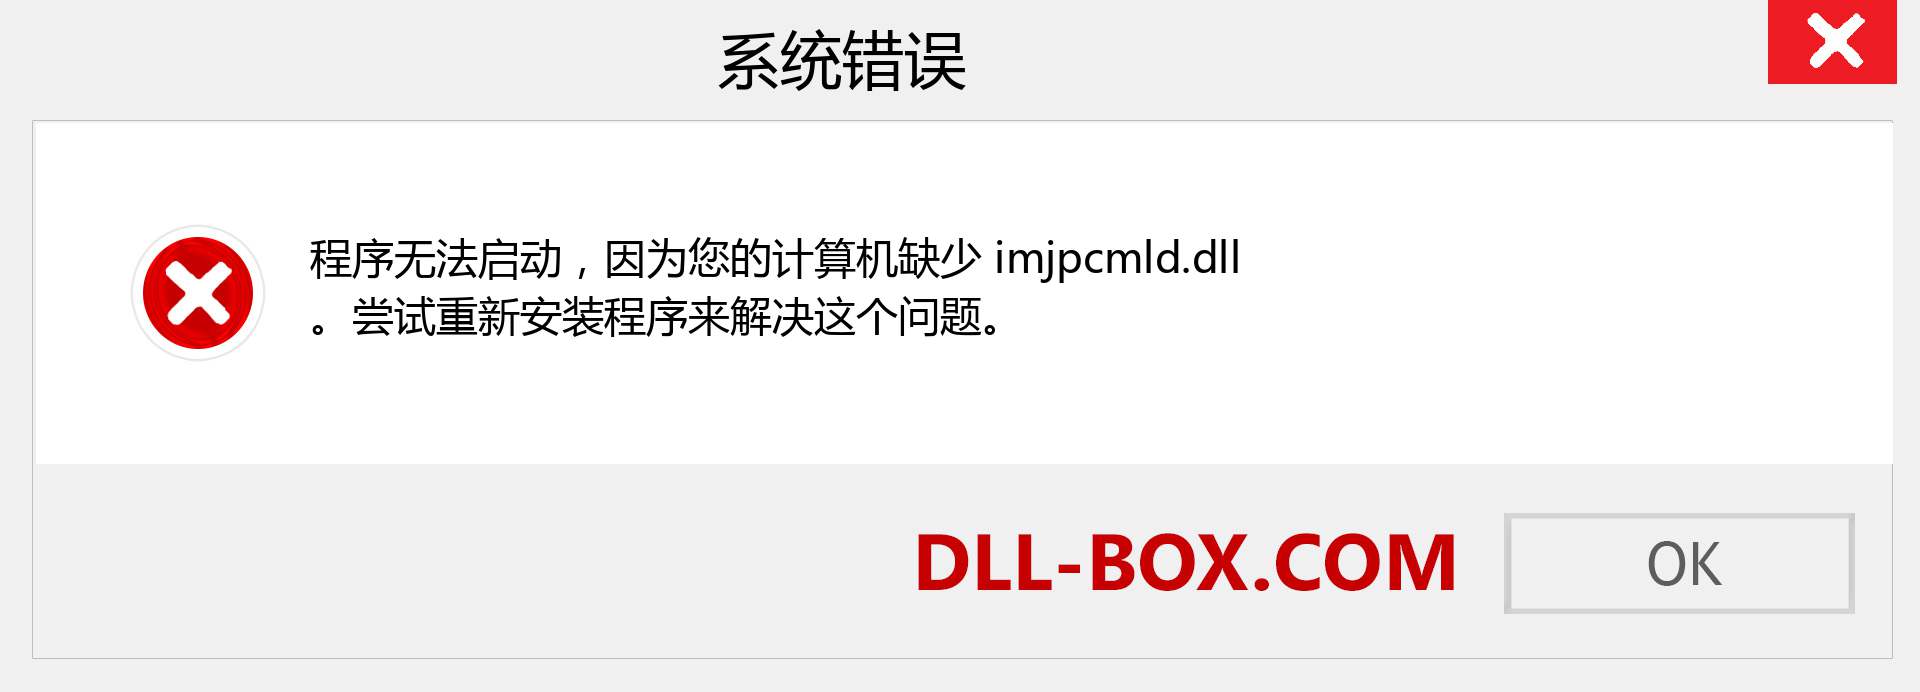 imjpcmld.dll 文件丢失？。 适用于 Windows 7、8、10 的下载 - 修复 Windows、照片、图像上的 imjpcmld dll 丢失错误